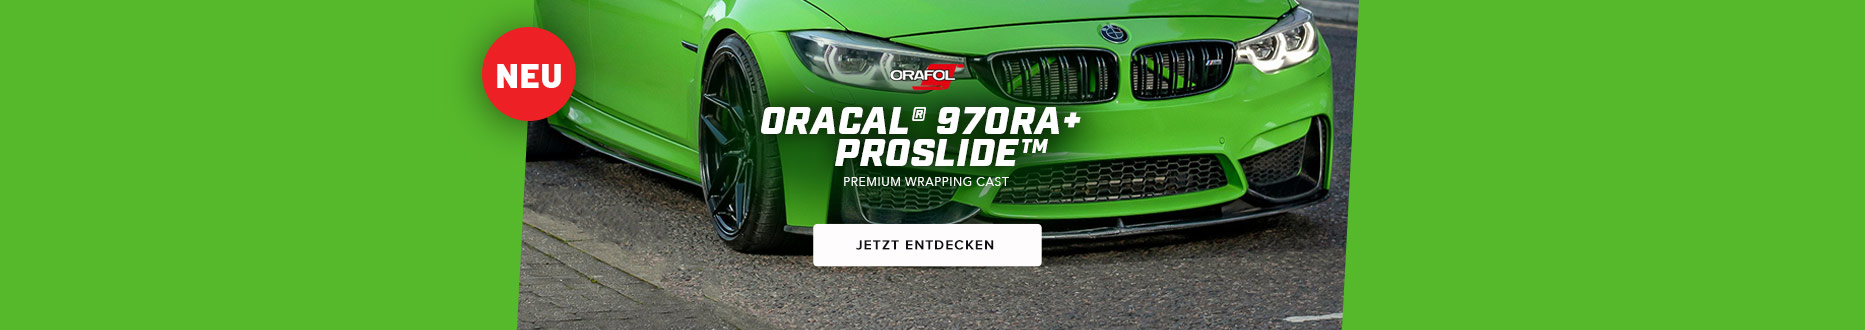 Orafol Oracal 970RA+ ProSlide